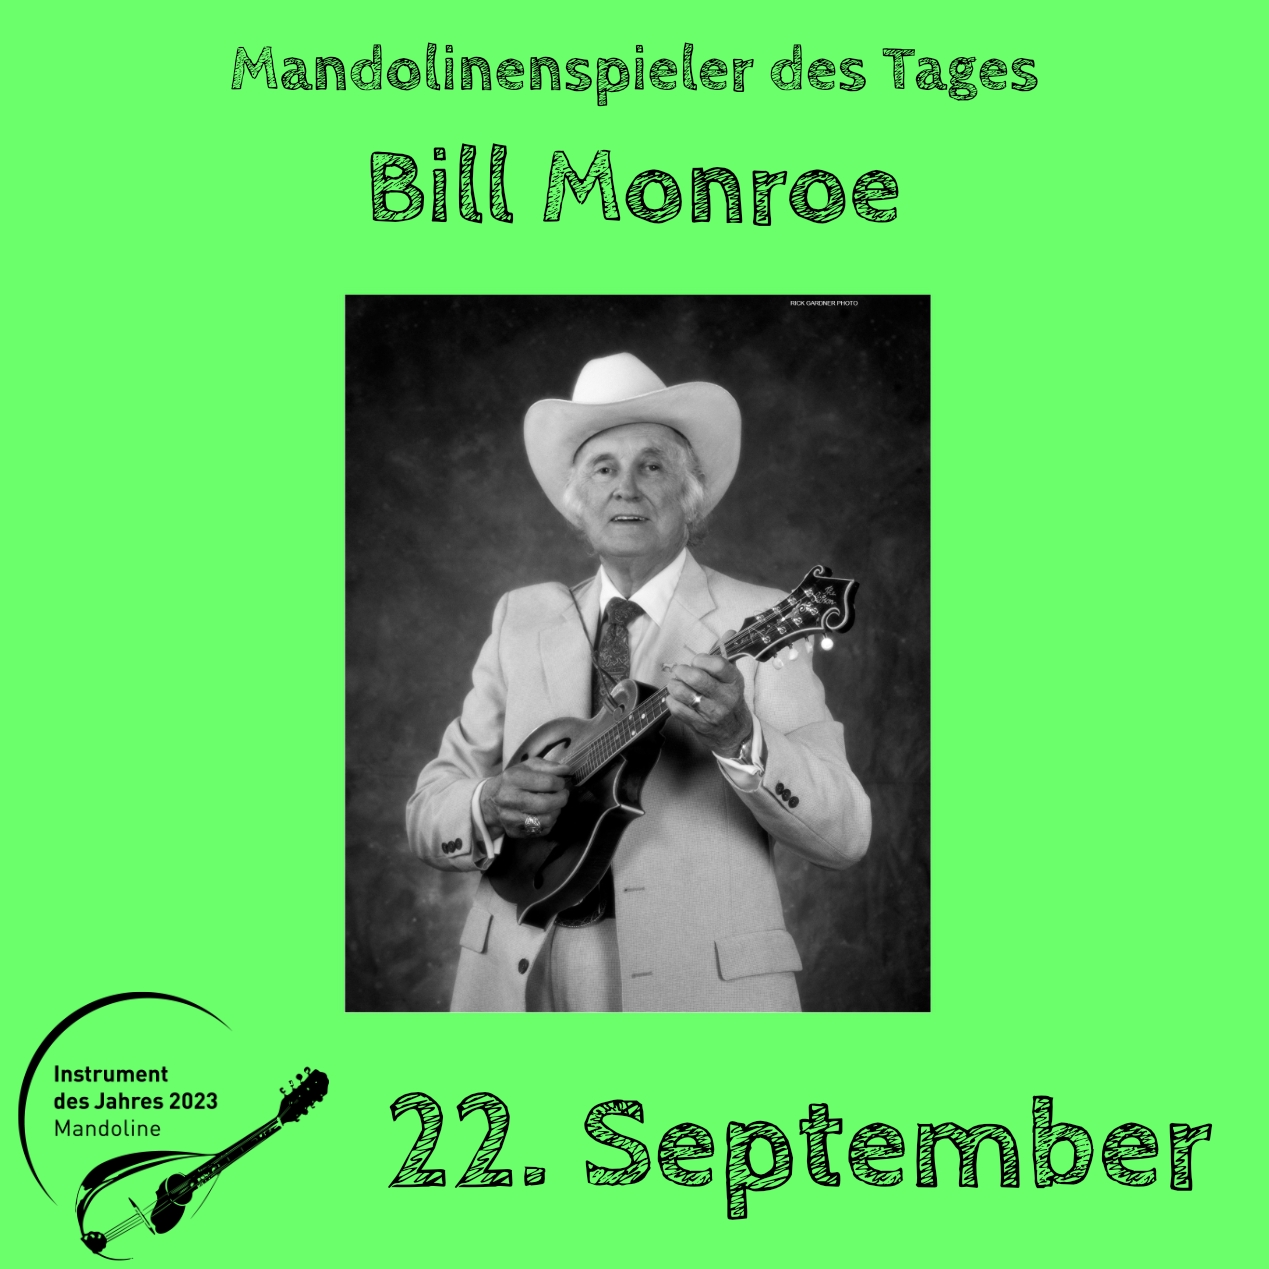 Bill Monroe Mandolinenspielerin Mandolinenspieler des Tages Mandoline Instrument des Jahres 2023